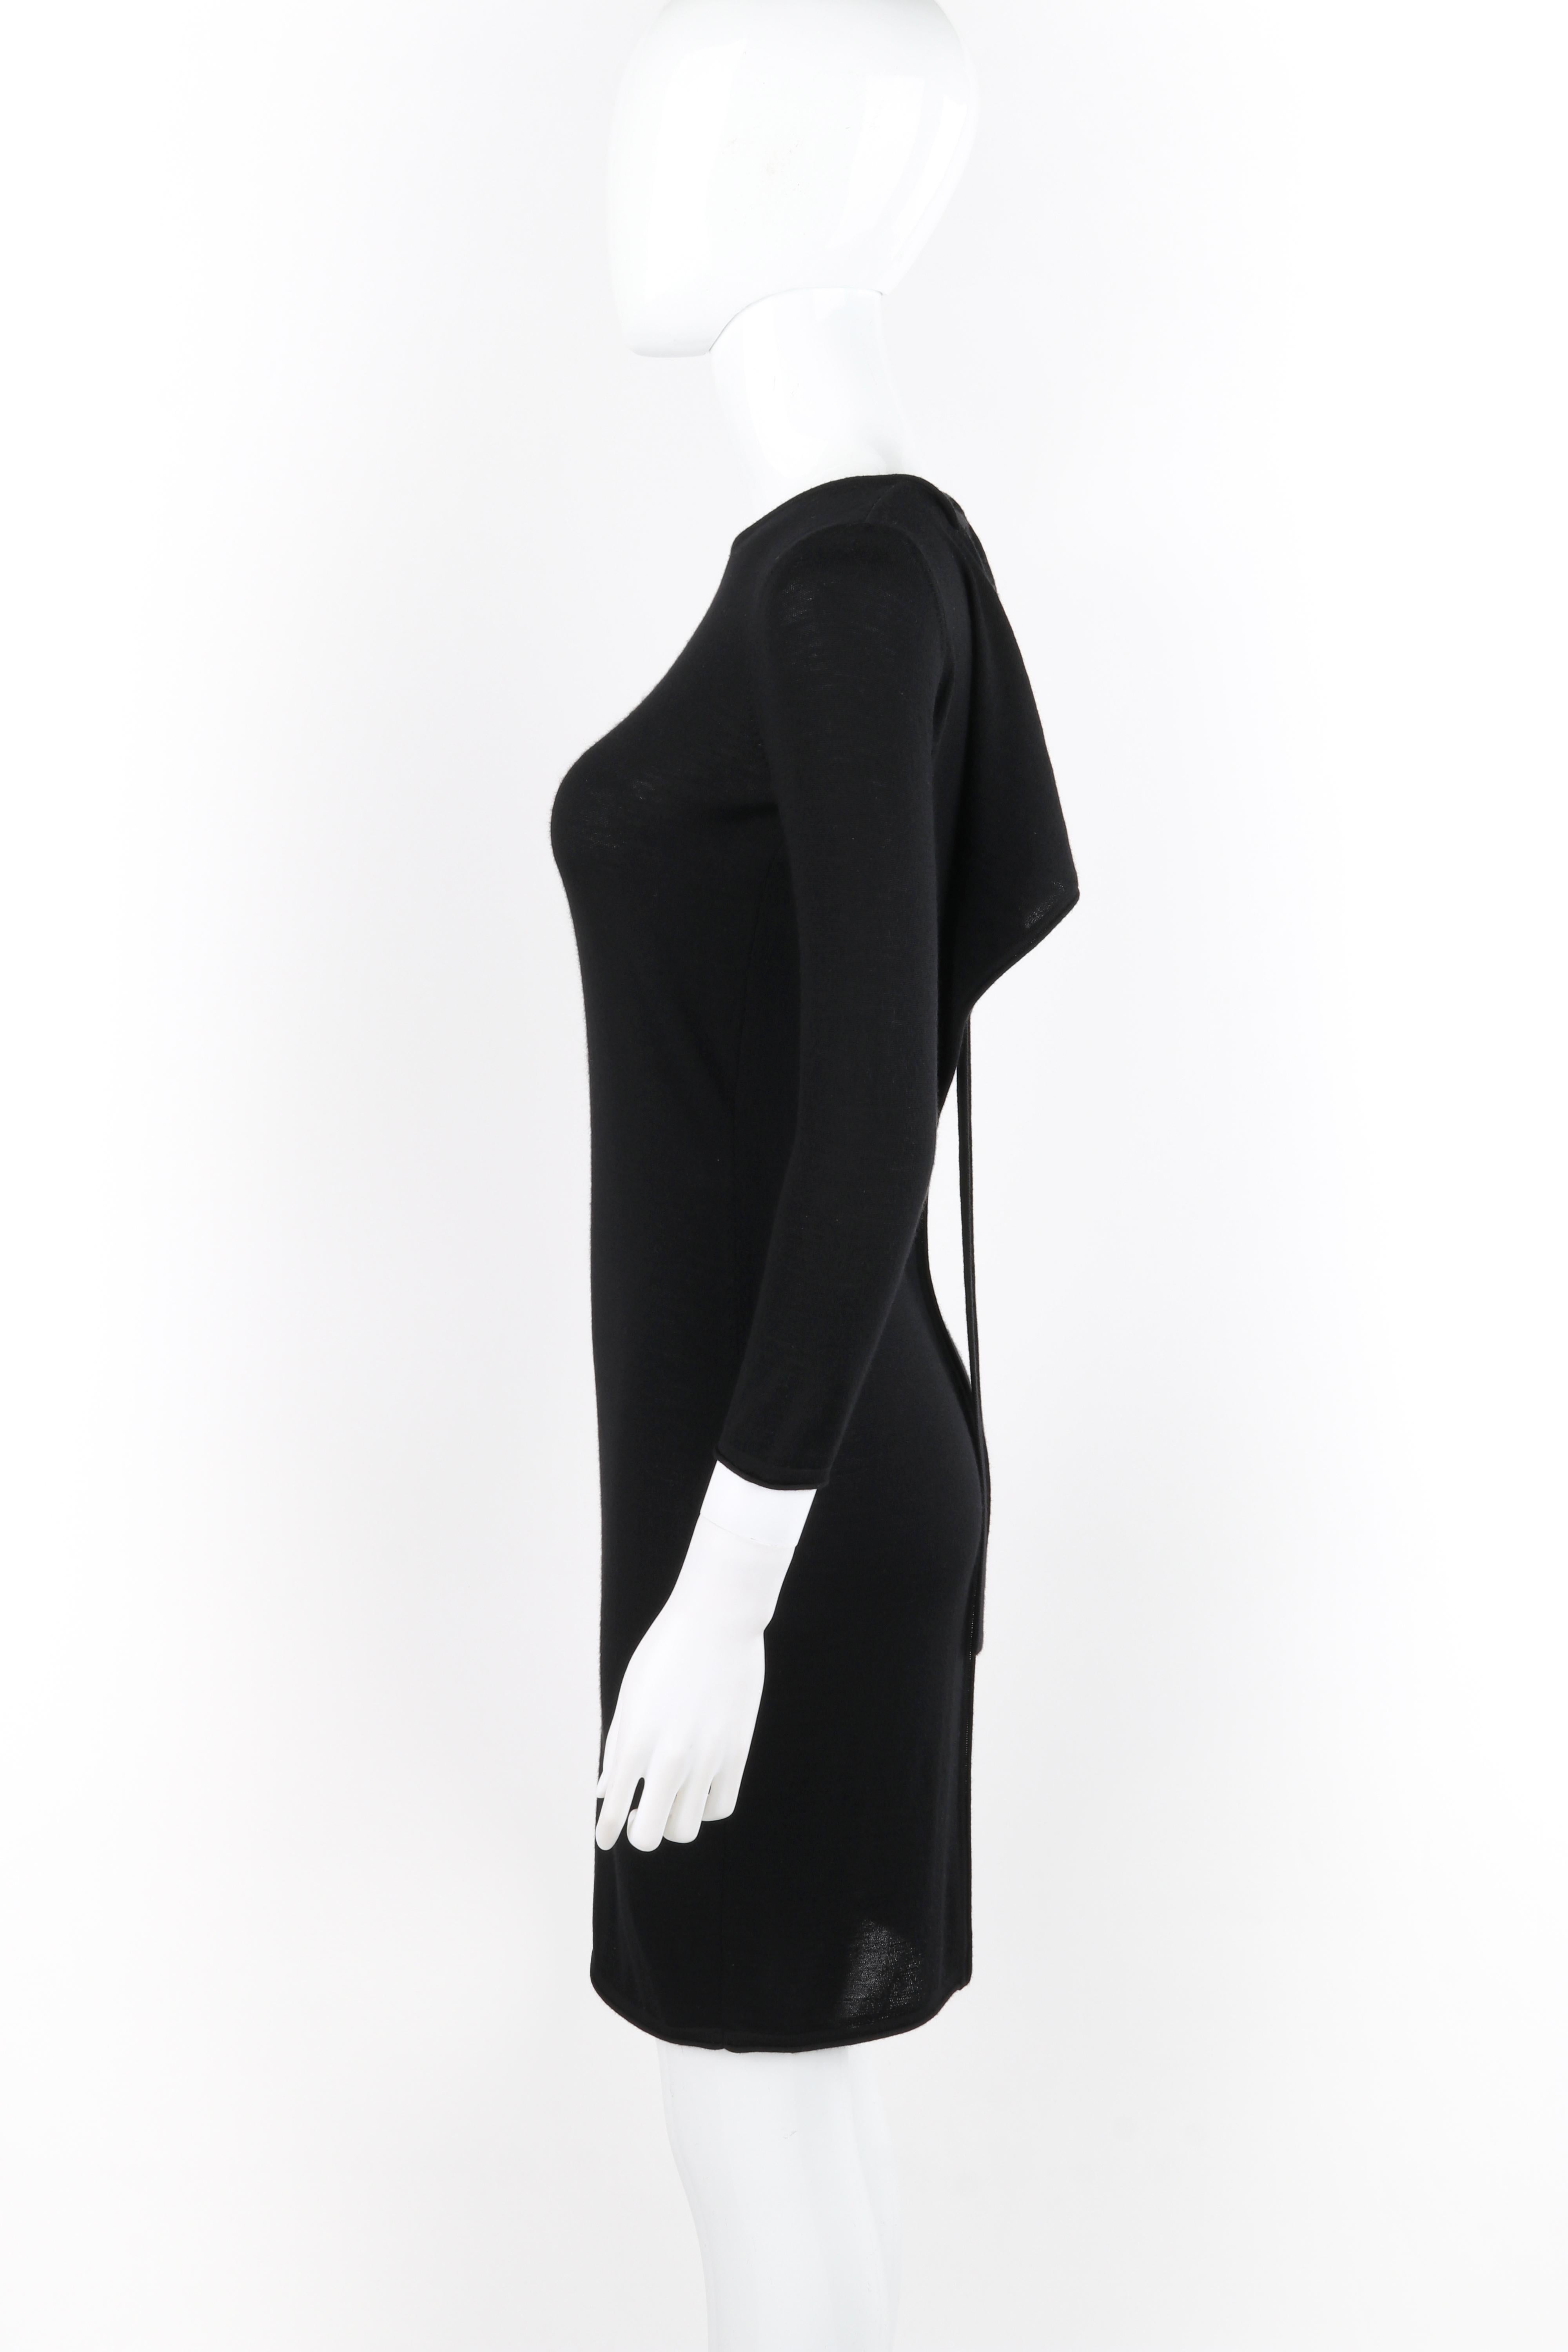 ALEXANDER McQUEEN F/W 2004 Black Knit Draped Open Back Tie Long Sleeve Dress For Sale 2